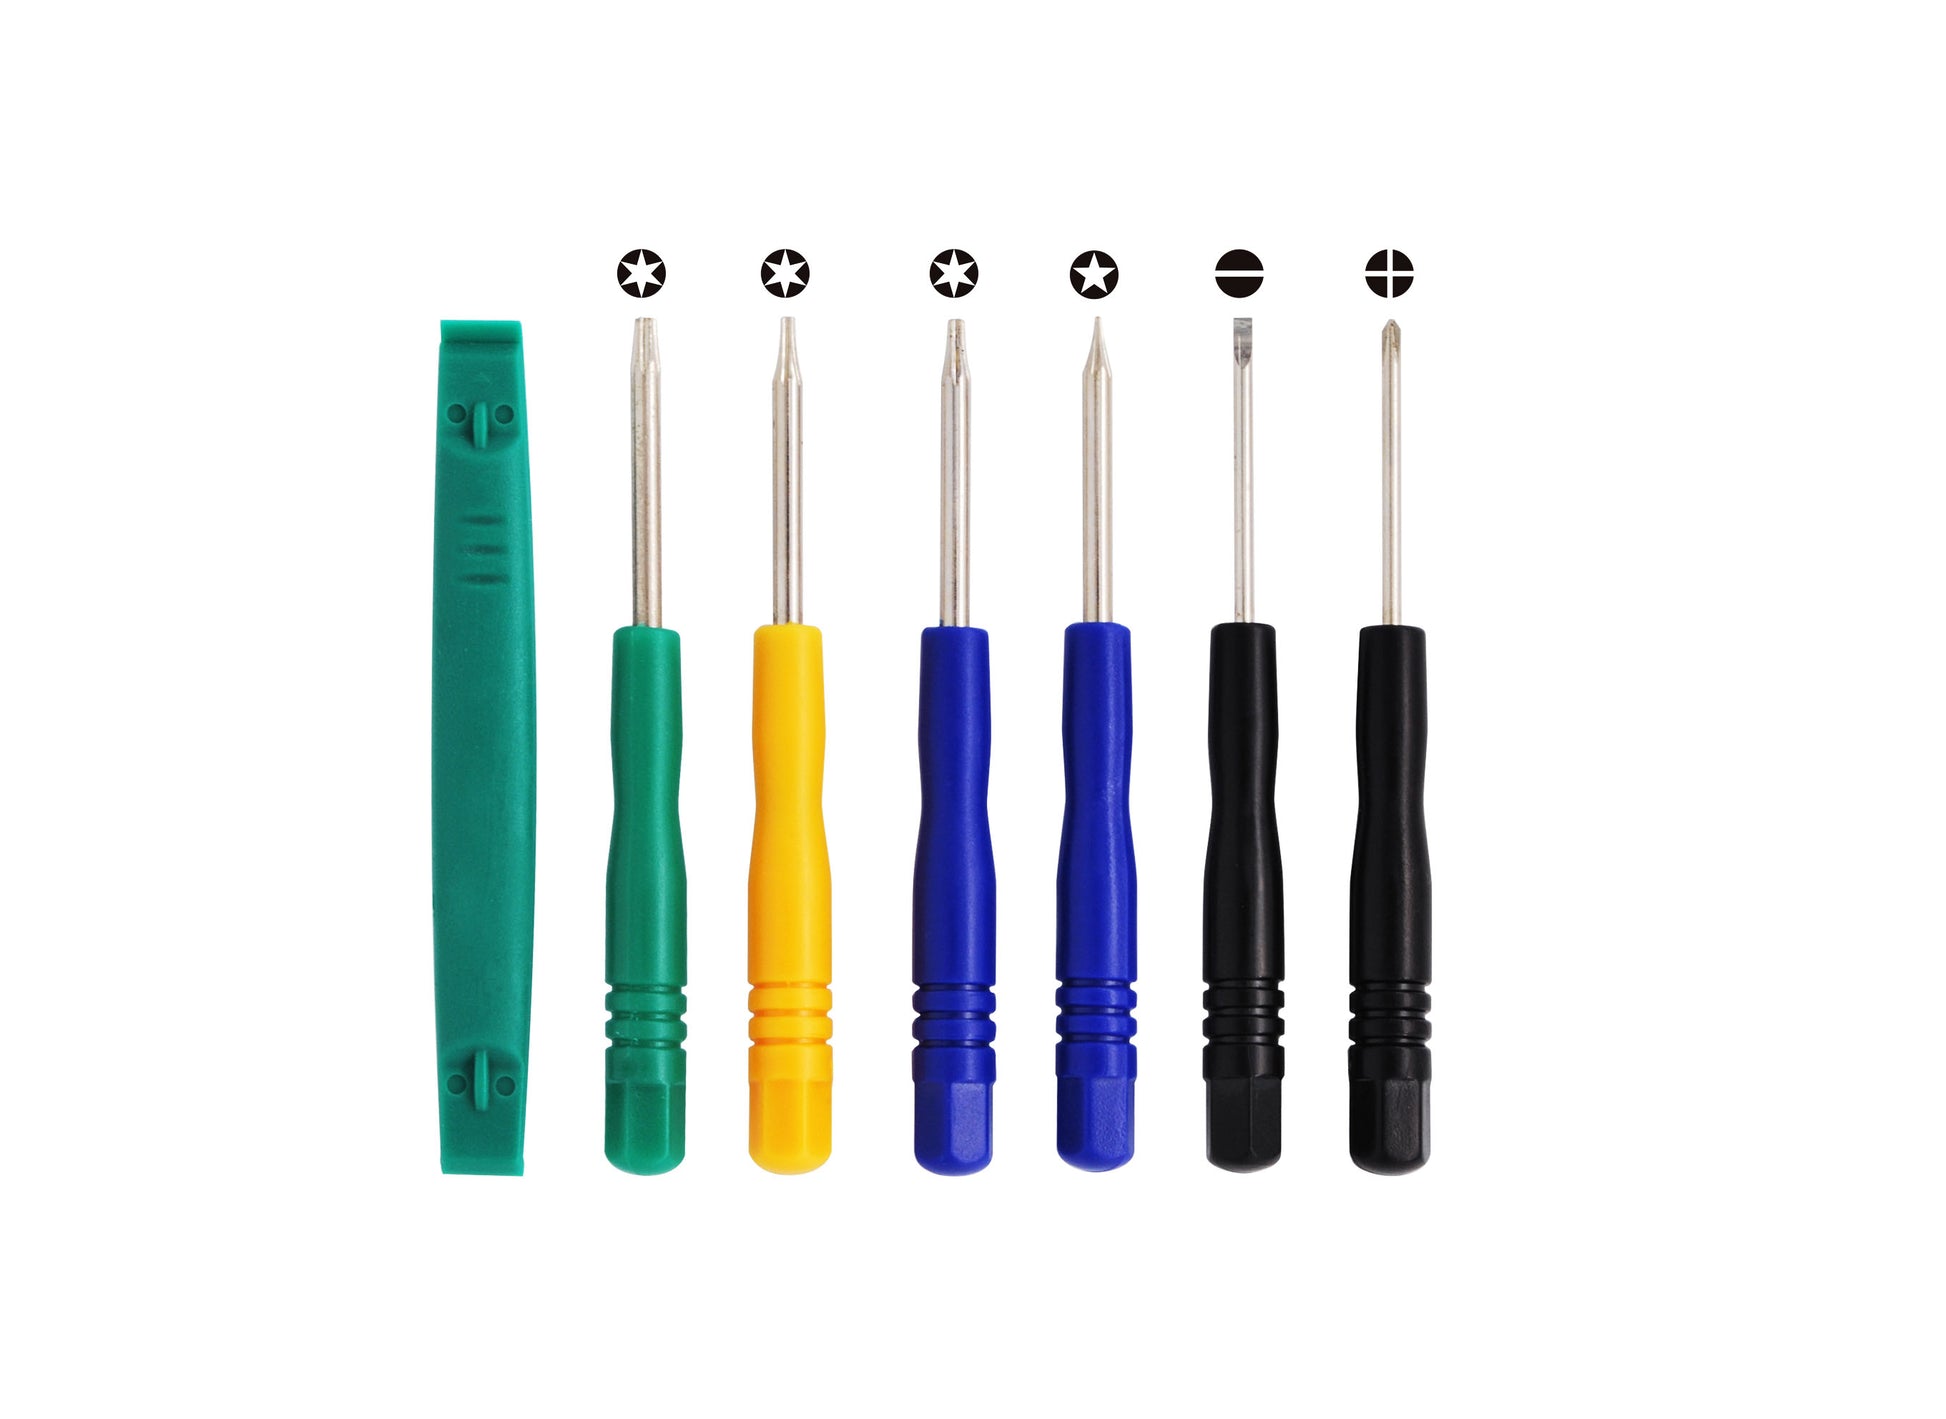 7 Tools (T8, T6, T5, T-, T+, Plastic & Pentalobe) set kit for iPOD, iPhone, iPAD Battery install-SMAVtronics